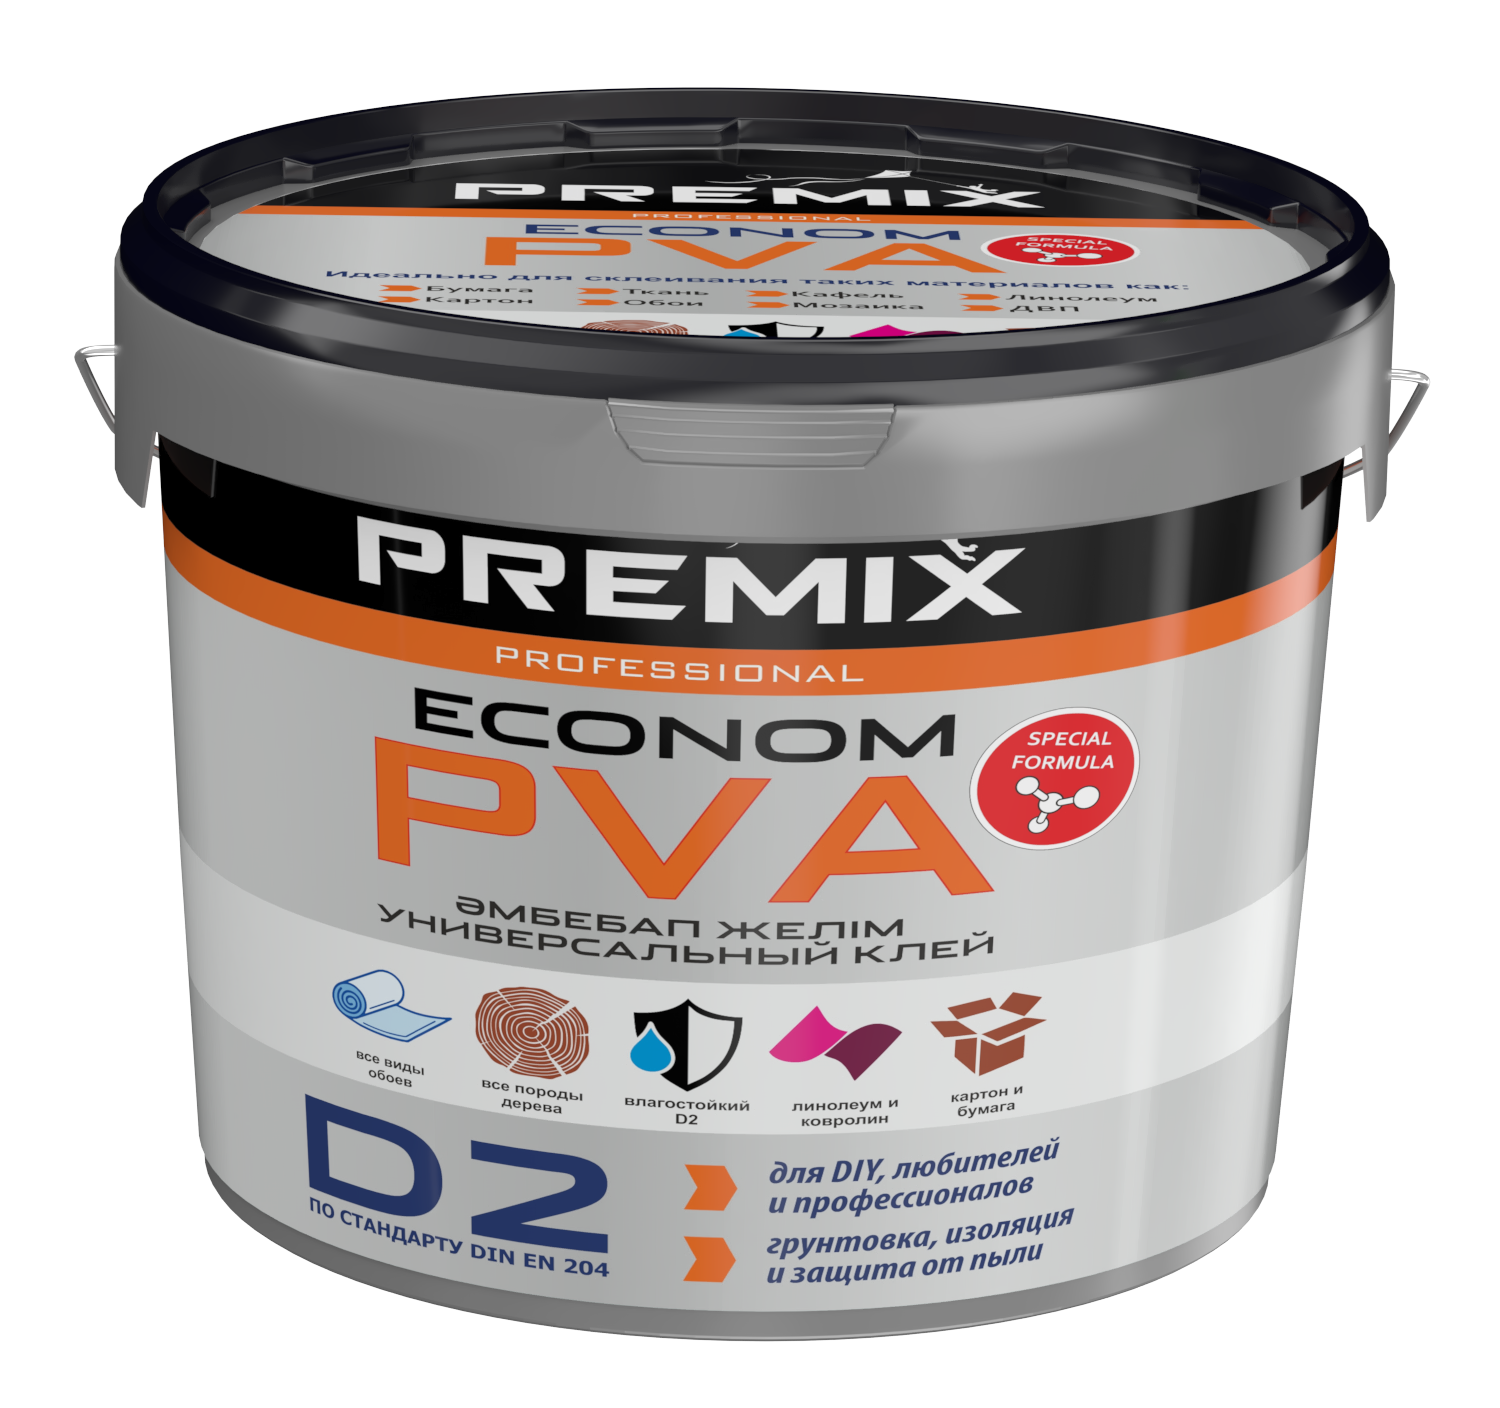 Premix клей PVA Econom универсальный клей (3кг)